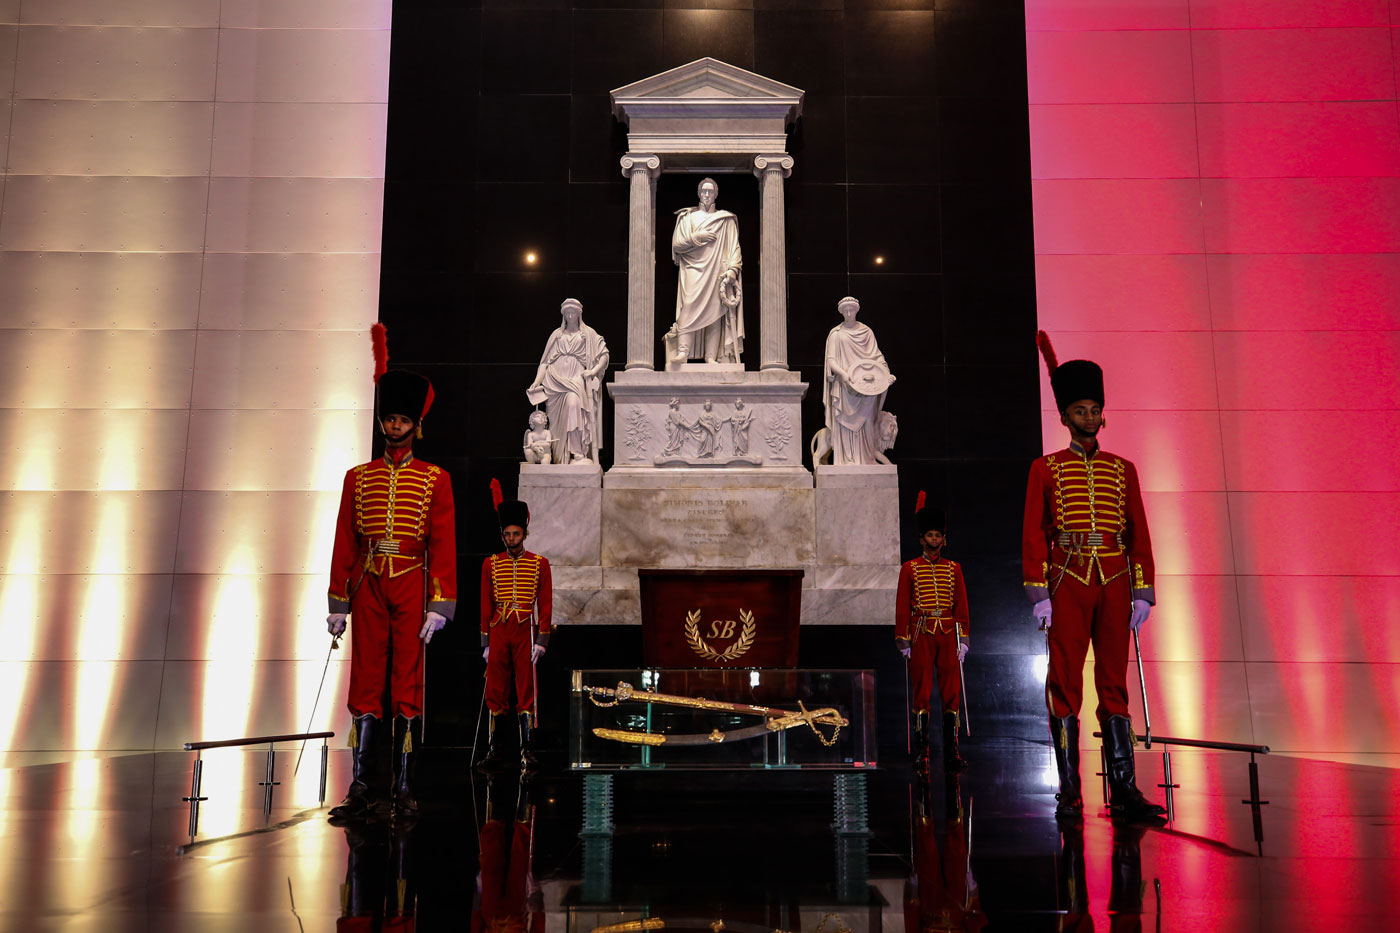 Venezuela rinde homenaje a Simón Bolívar en el 187 aniversario de su muerte